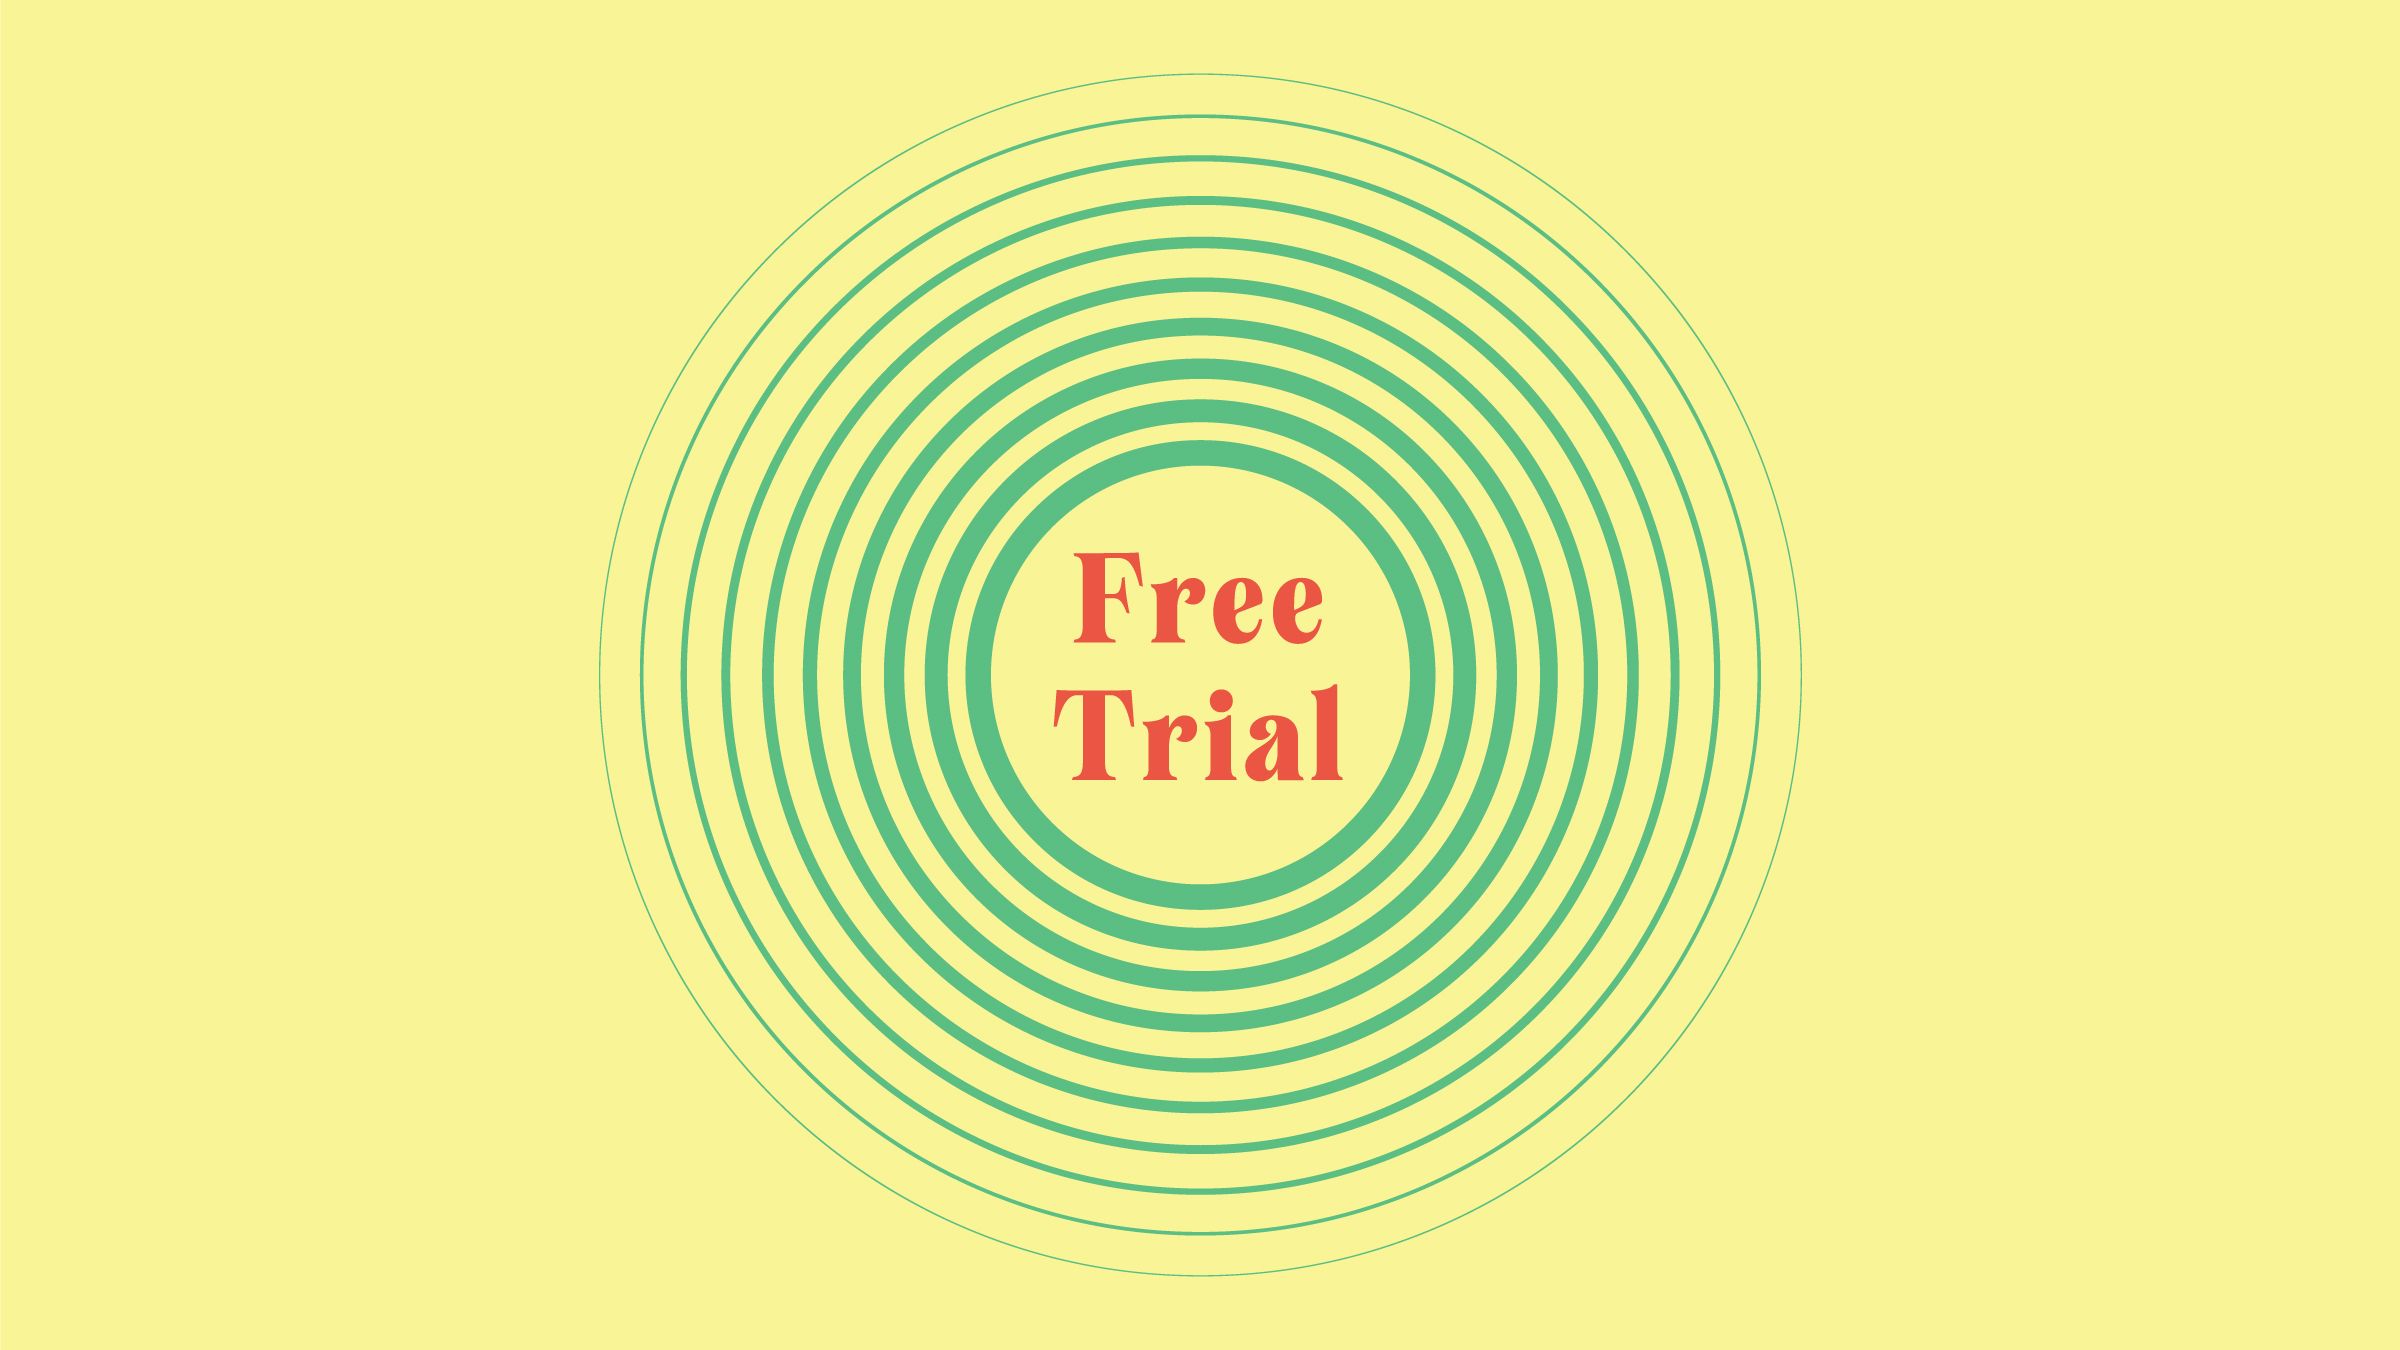 saas free trial best practices